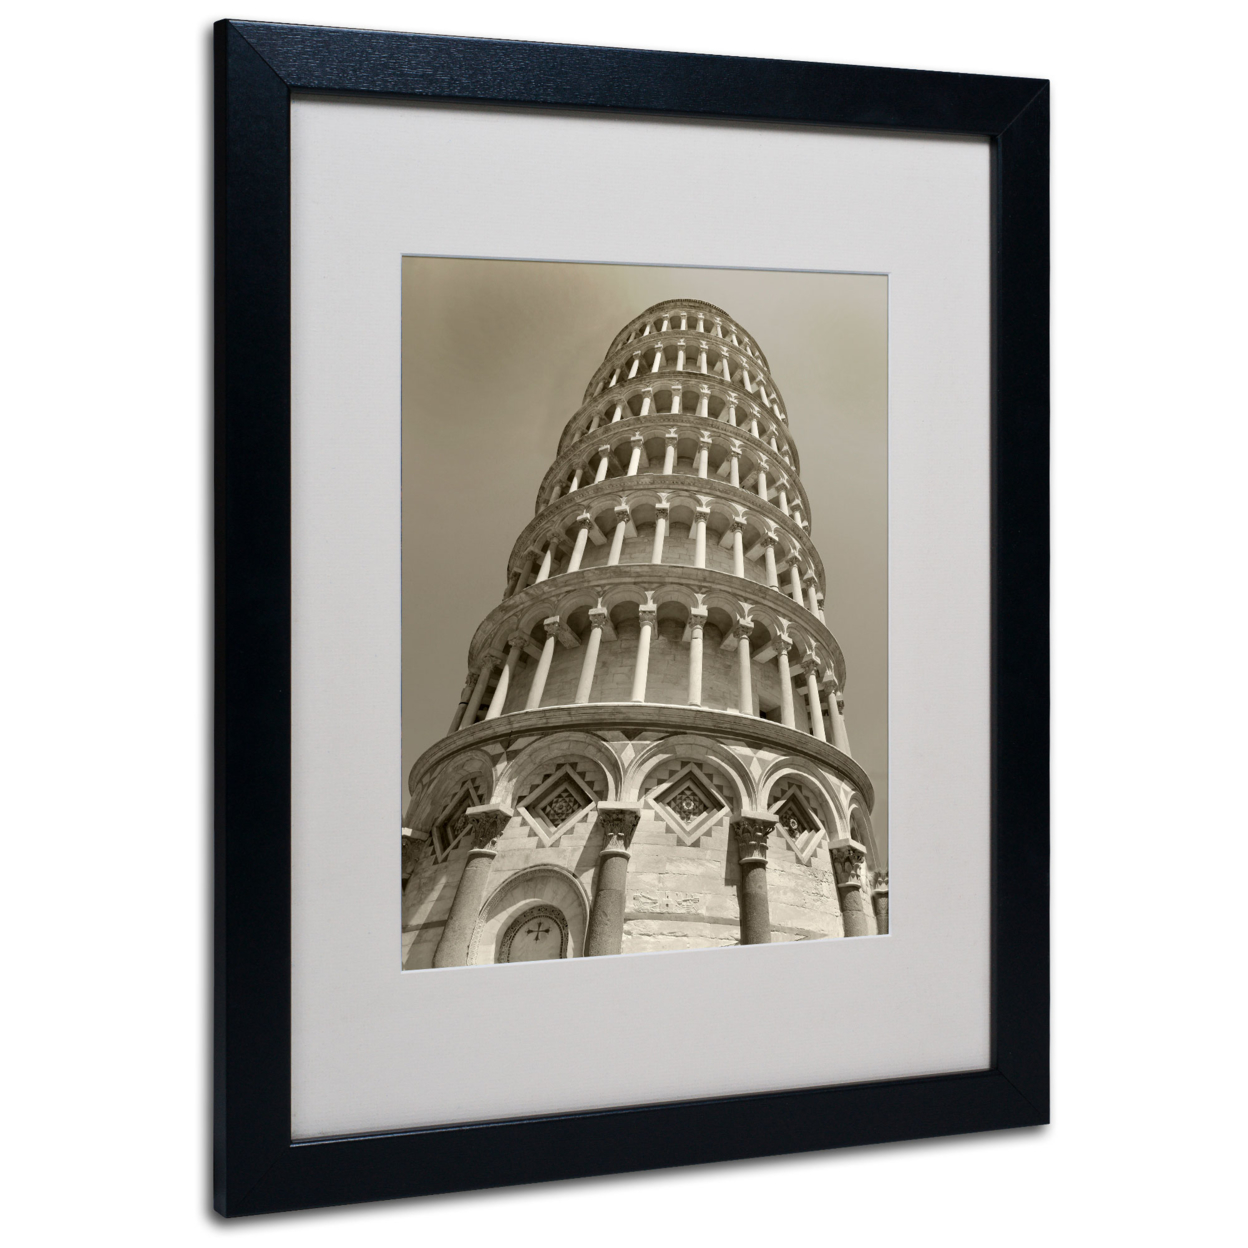 Chris Bliss 'Pisa Tower II' Black Wooden Framed Art 18 X 22 Inches